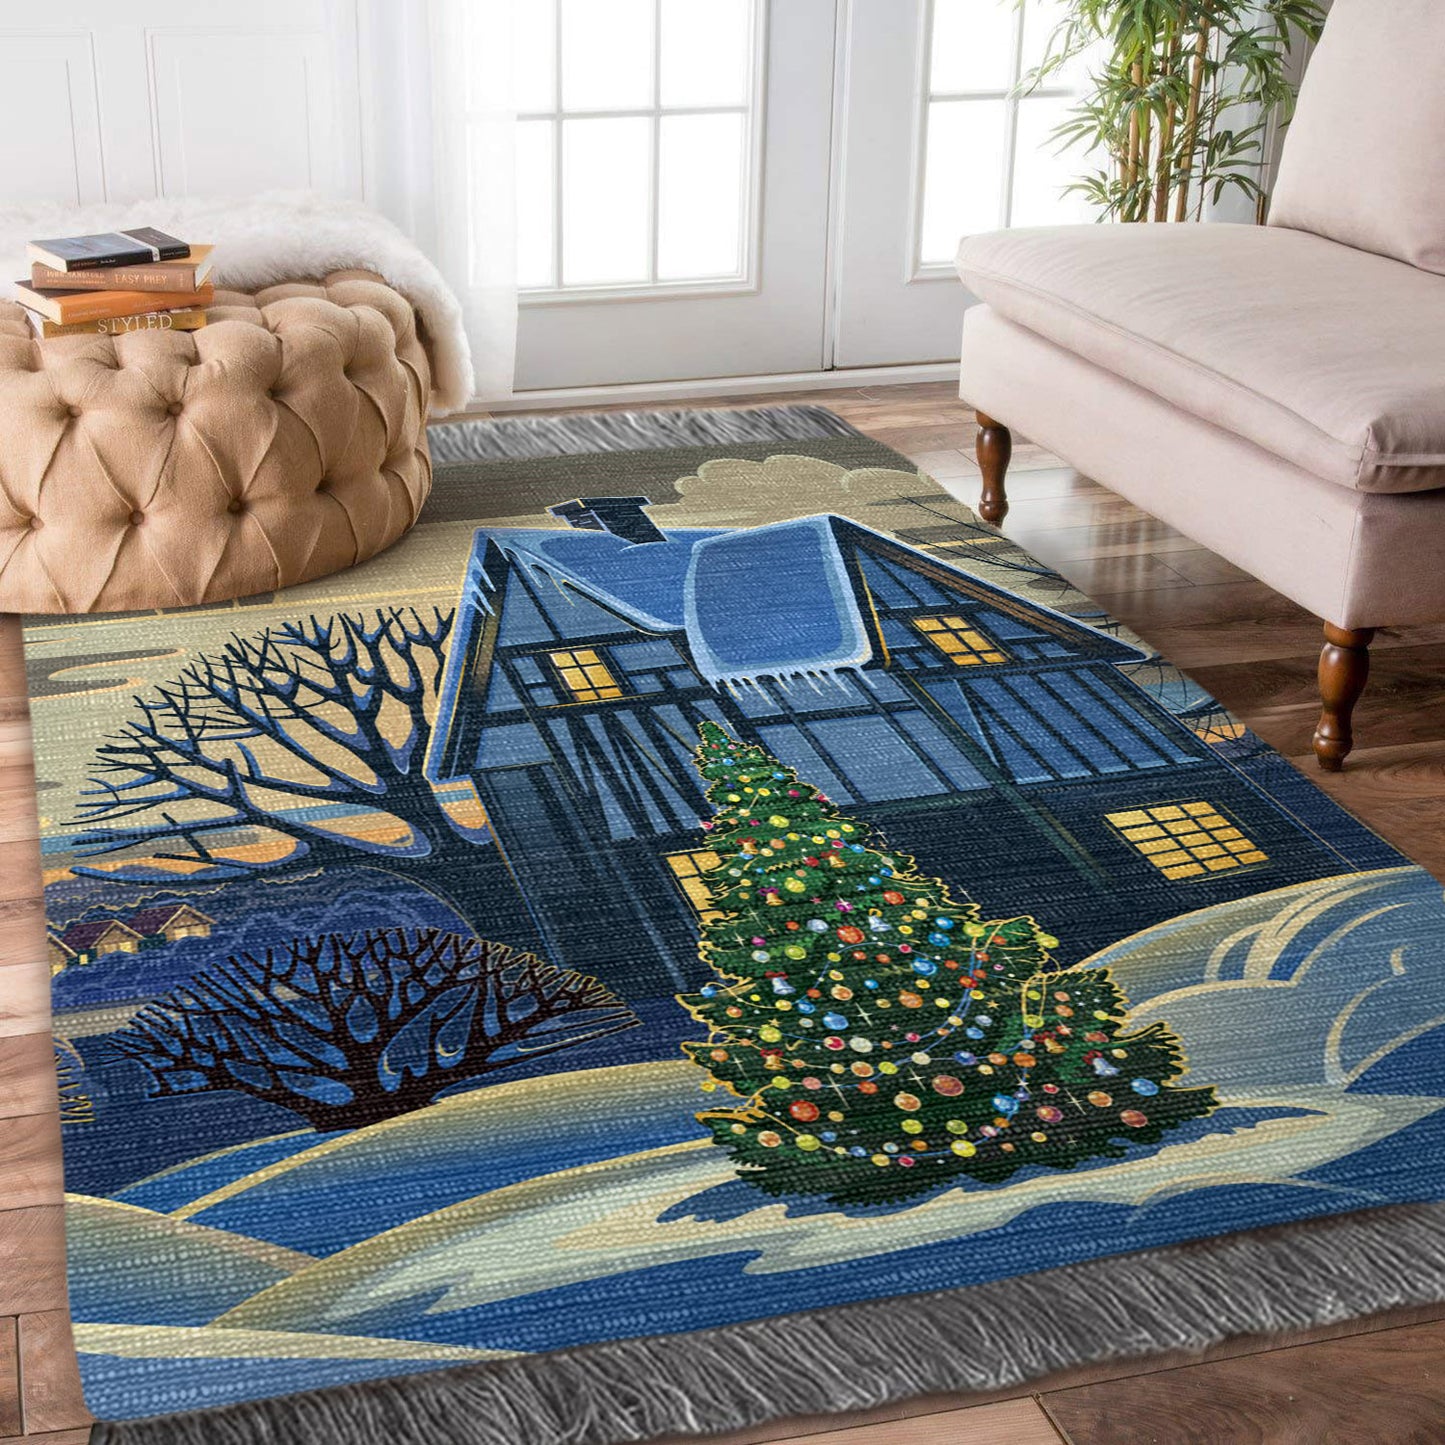 Christmas HN0110042O Decorative Floor-cloth